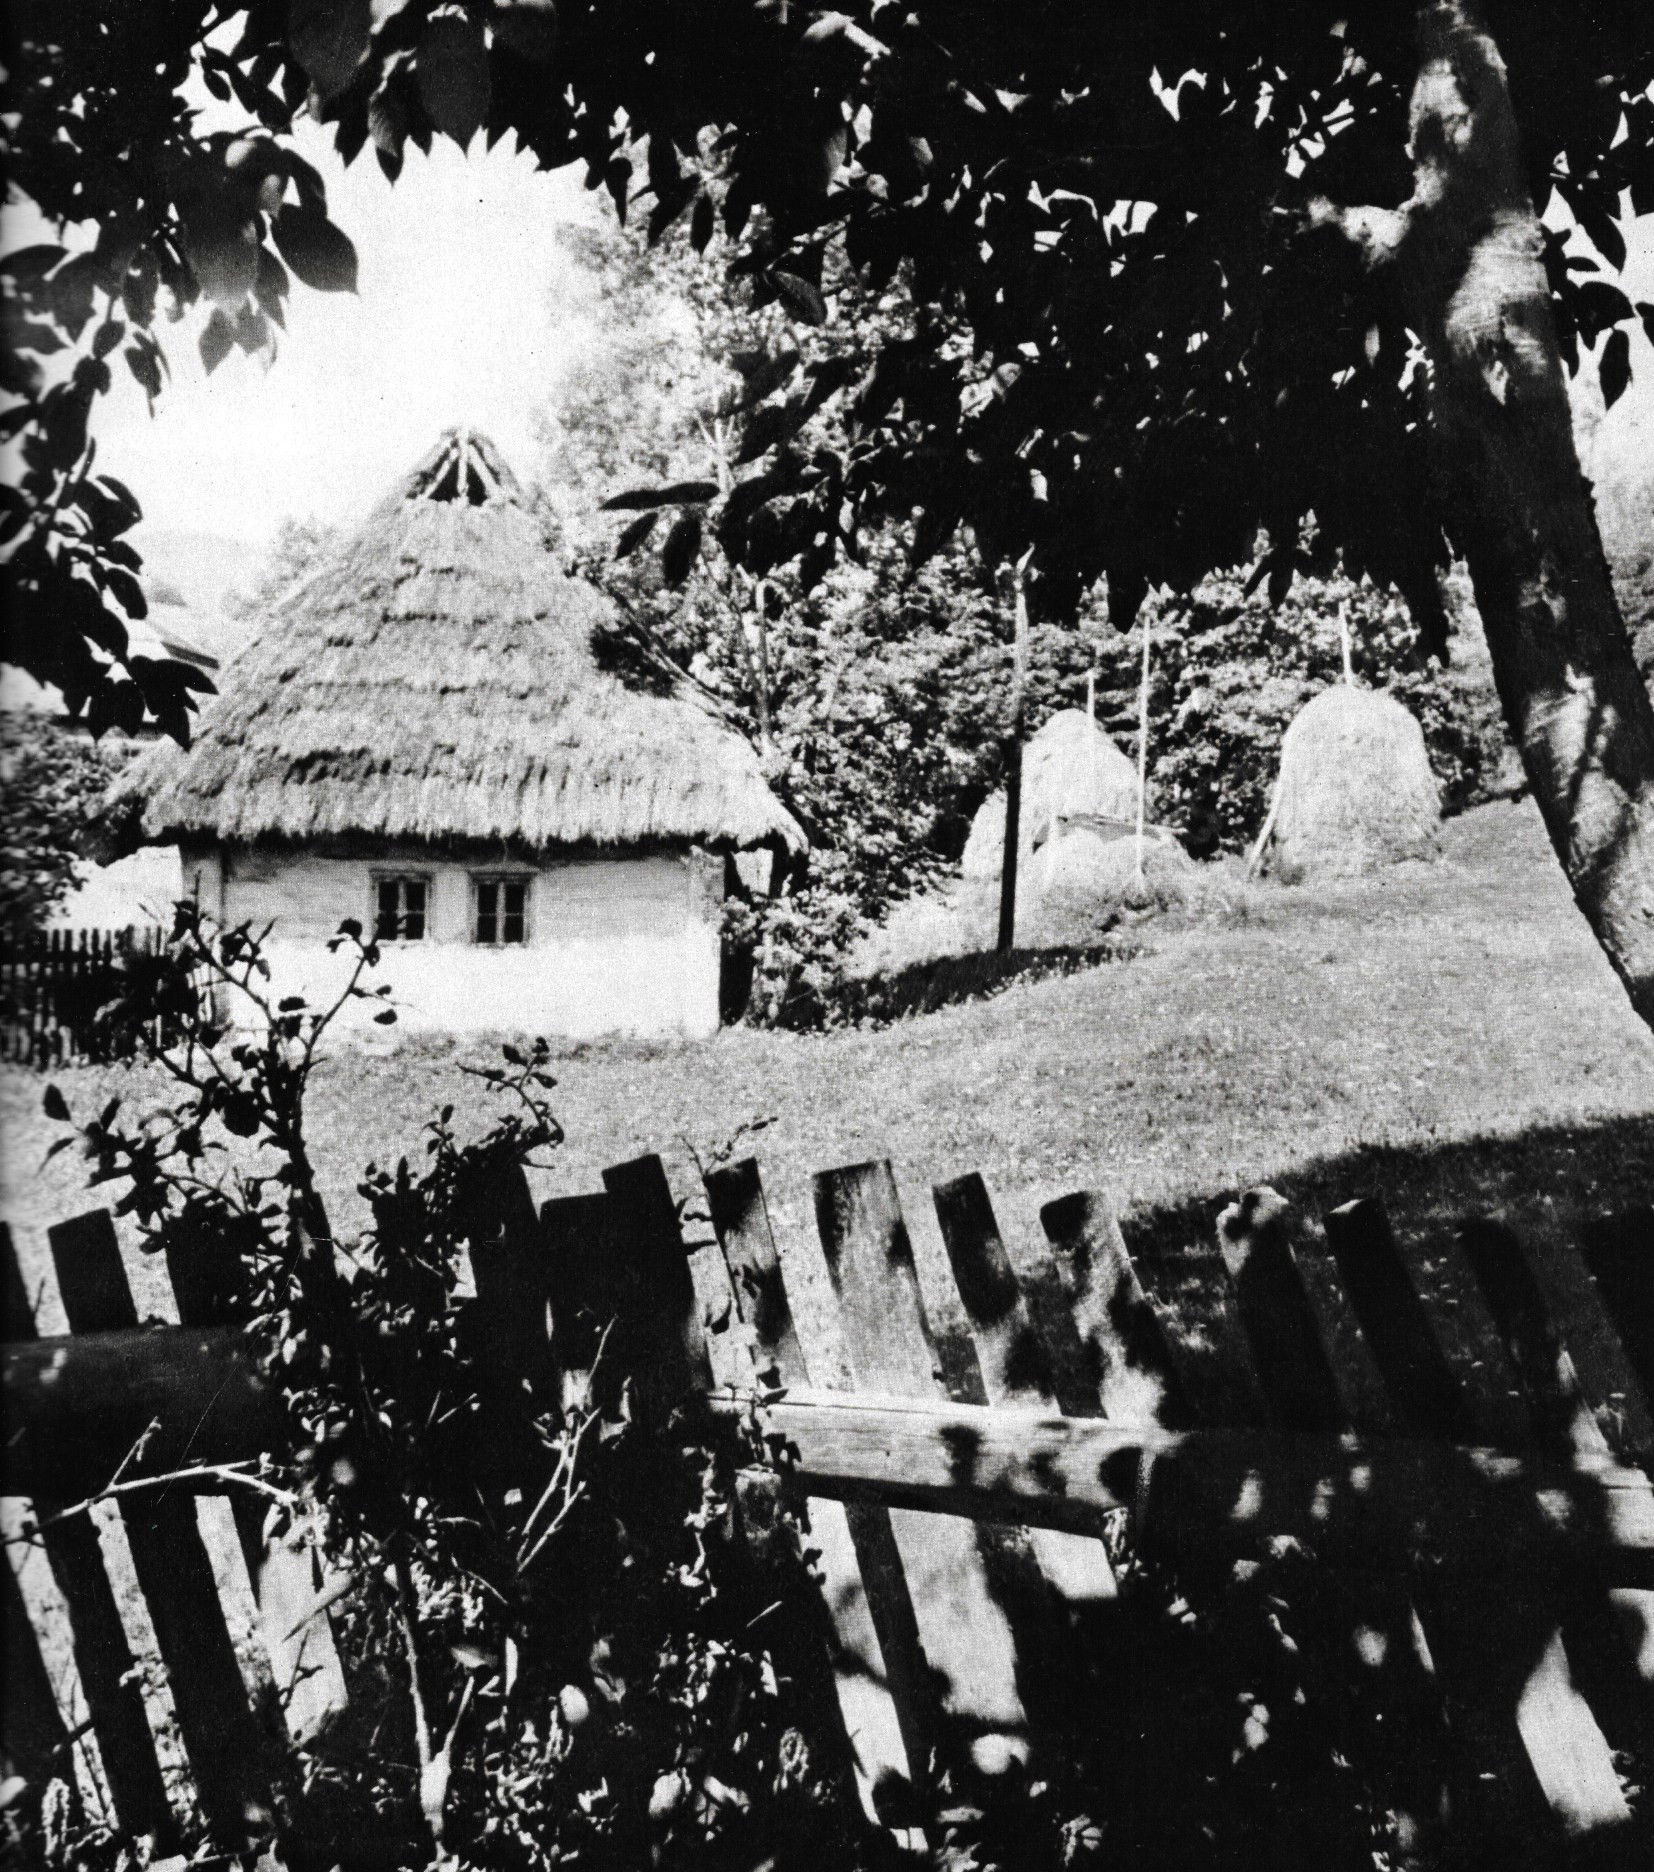 Tradičná ľudová architektúra regiónu severného Zemplína (autor foto: Ladislav Deneš, reprofoto z publikácie Zemplín, 1984)